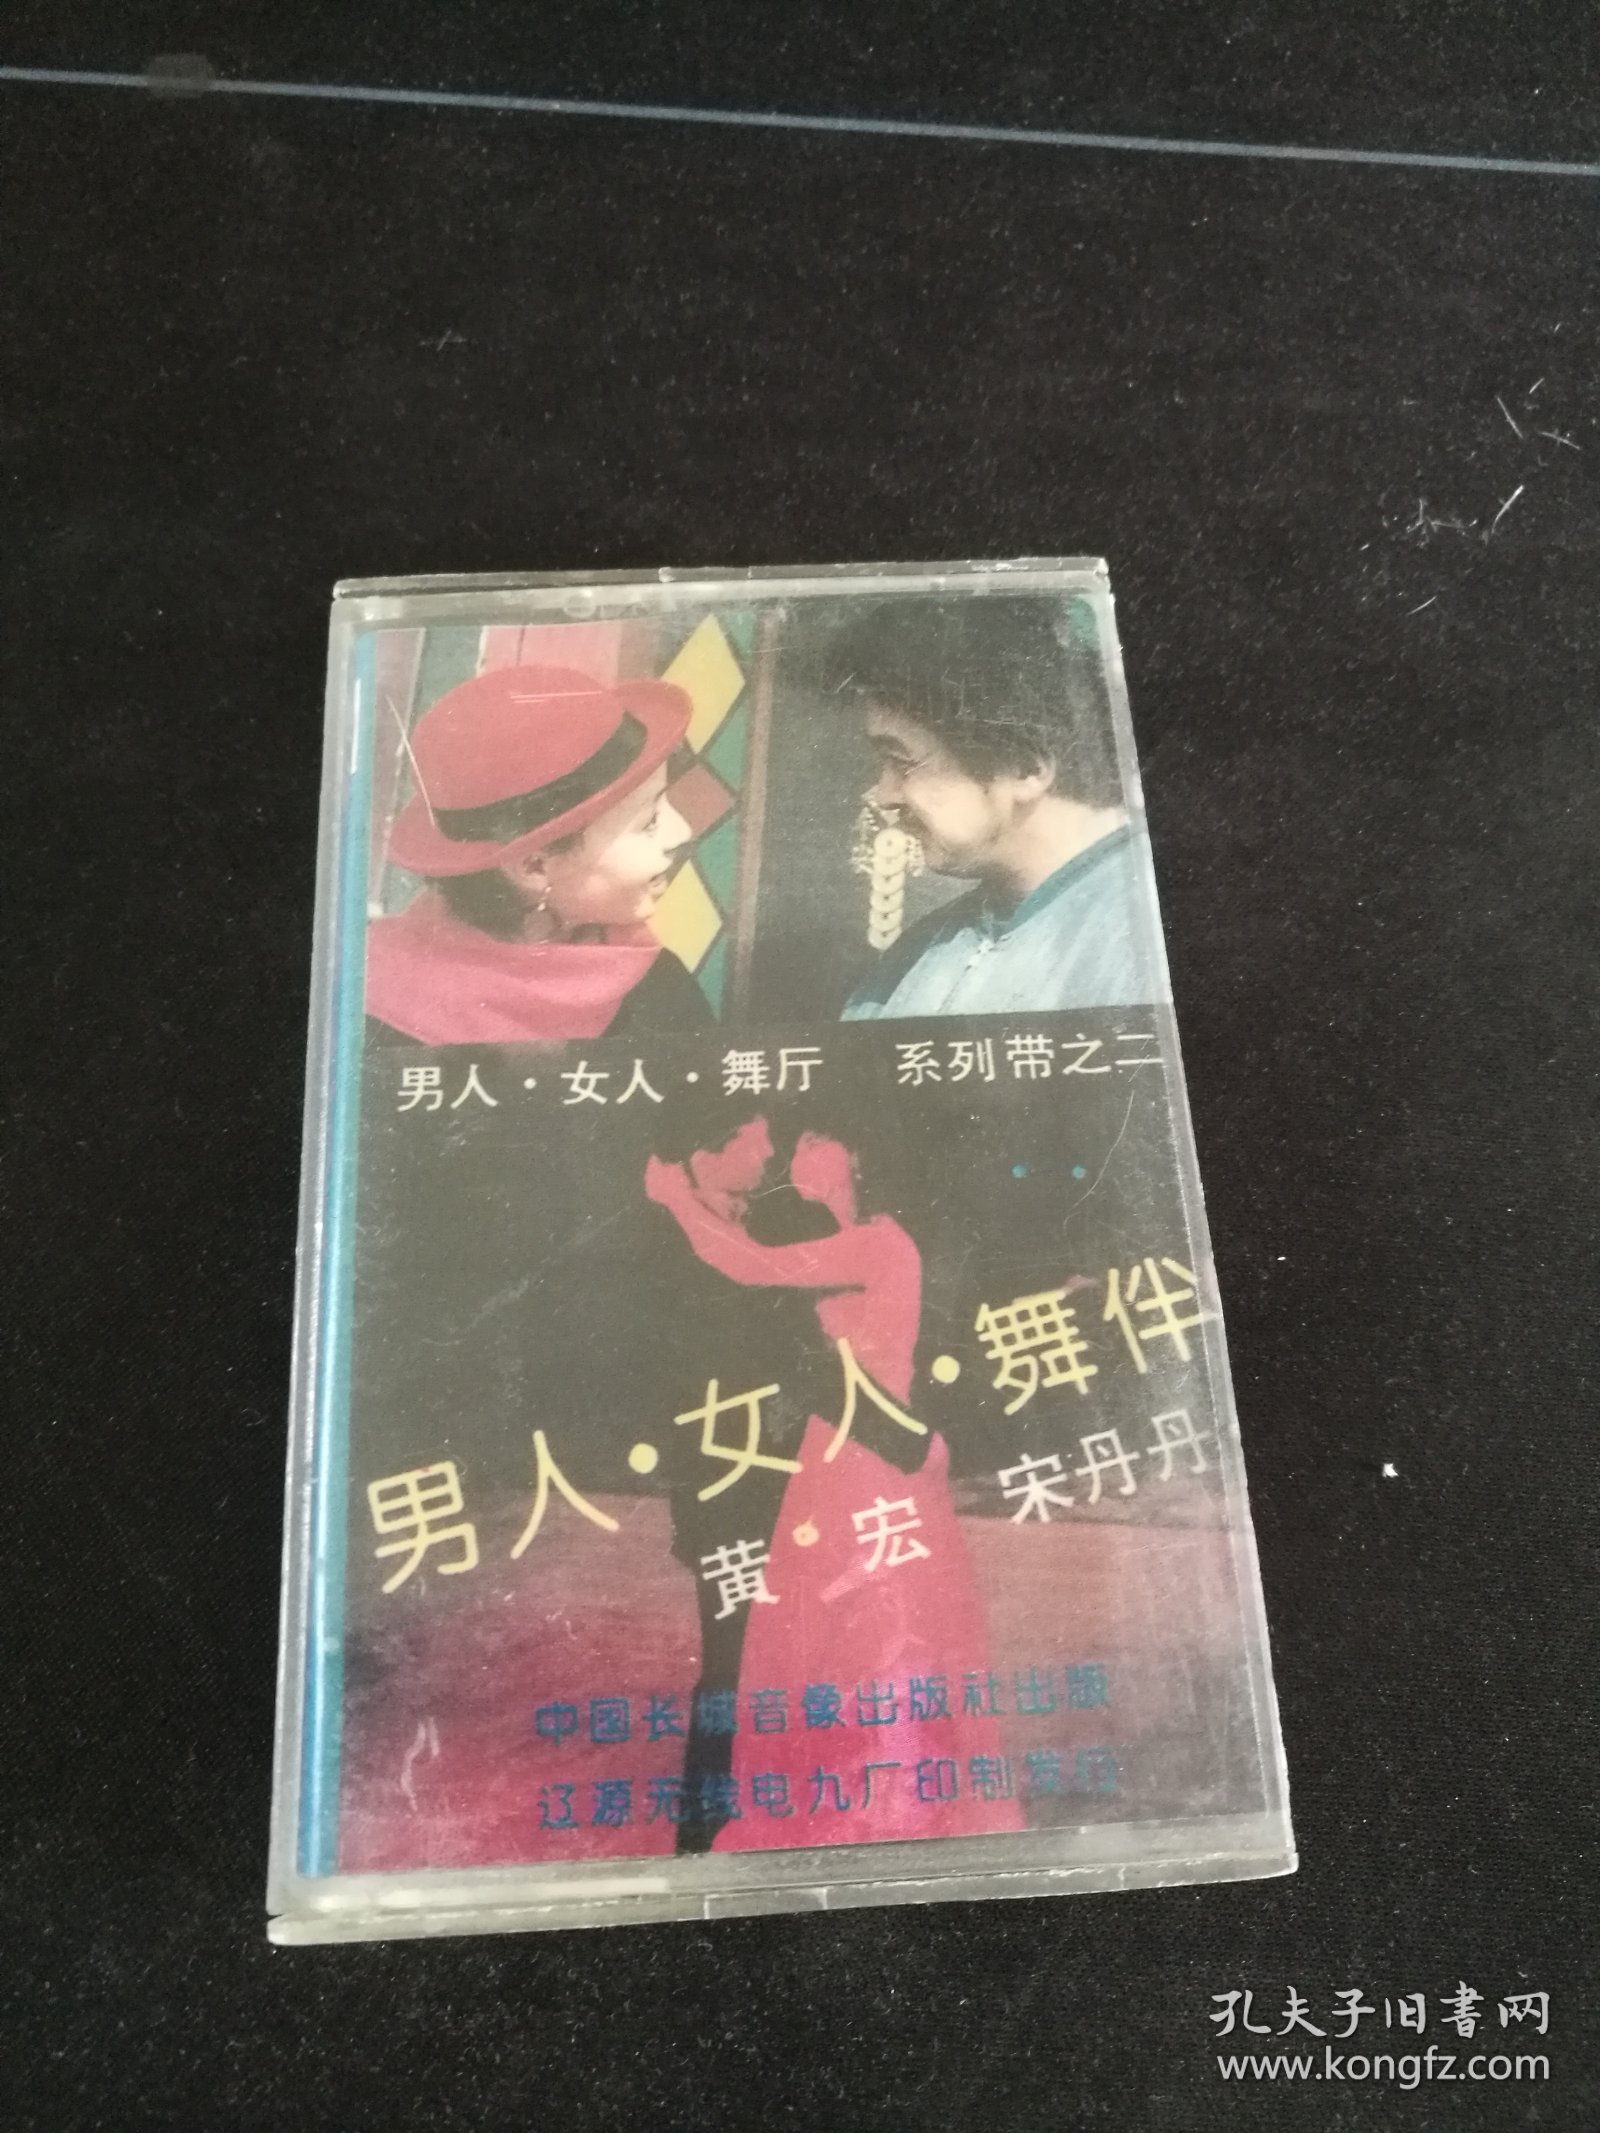 《男人·女人·舞厅 系列带之二》磁带，黄宏，宋丹丹，中国长城音像出版社出版，按图发货